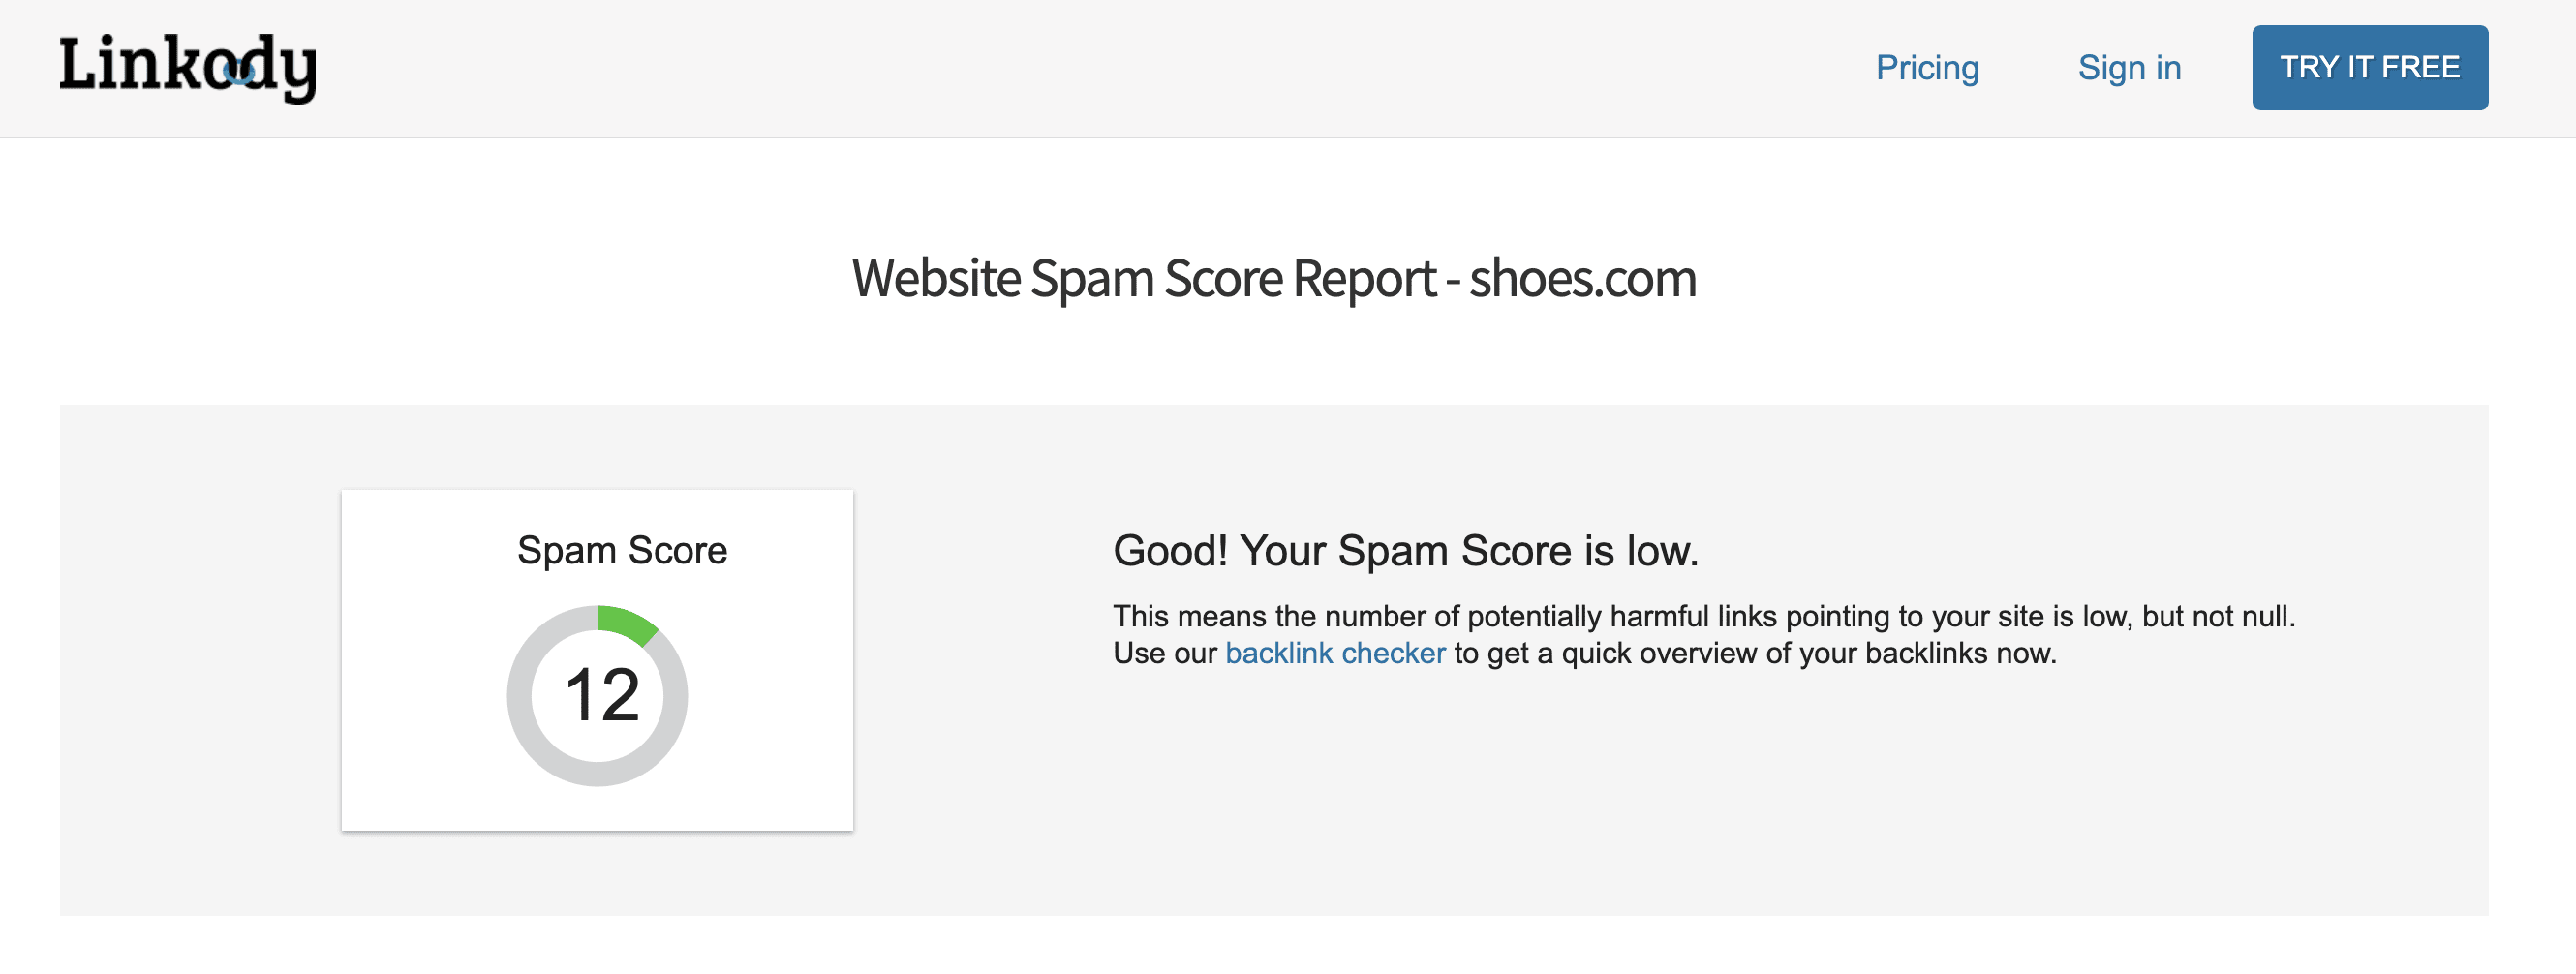 Linkody’s Website Spam Score Checker tool